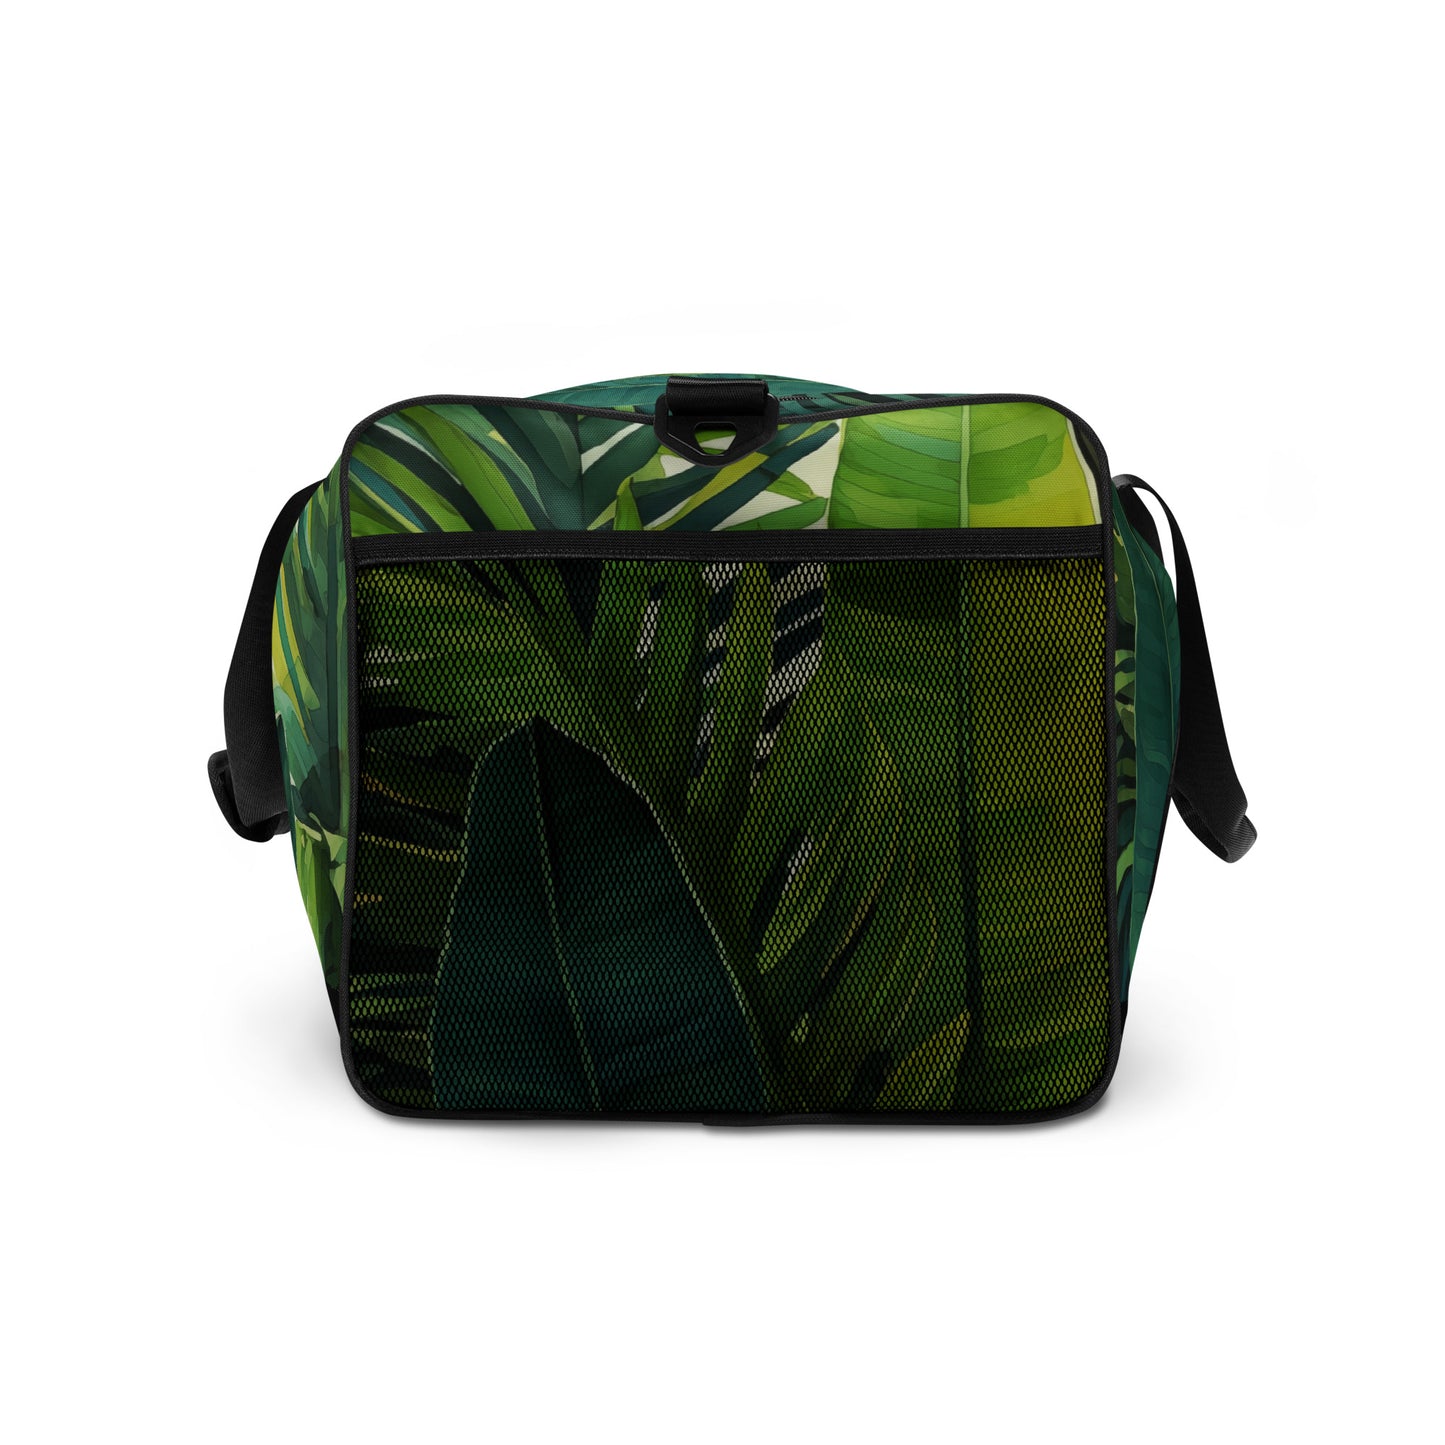 Mercatia Tropical Pattern Duffle Bag